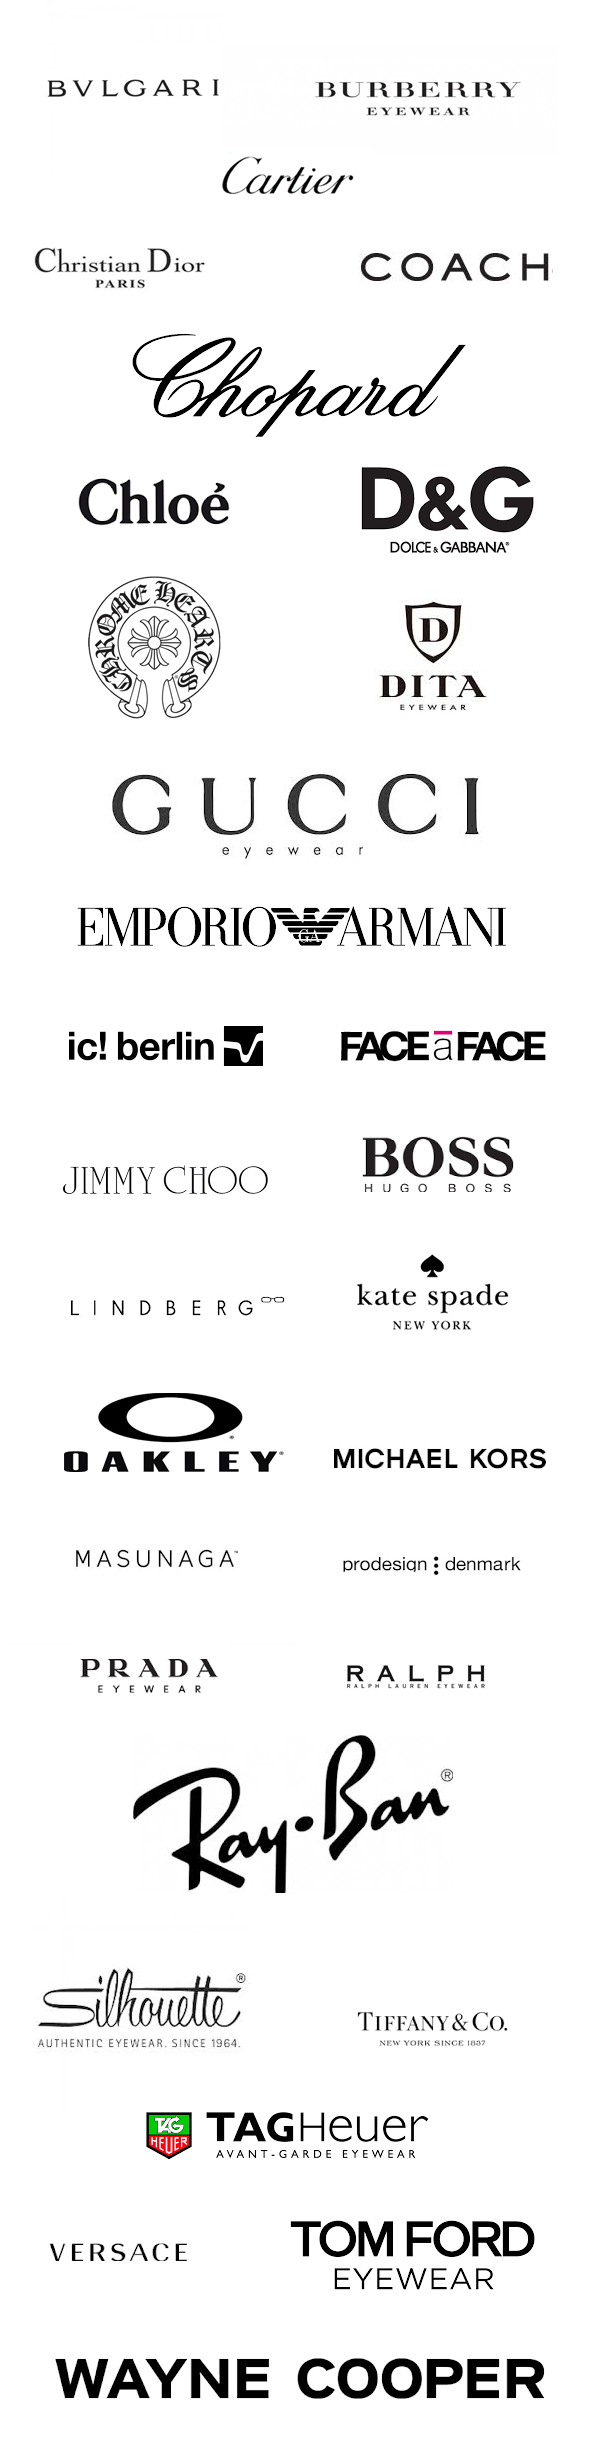 C2020 eyewear brands